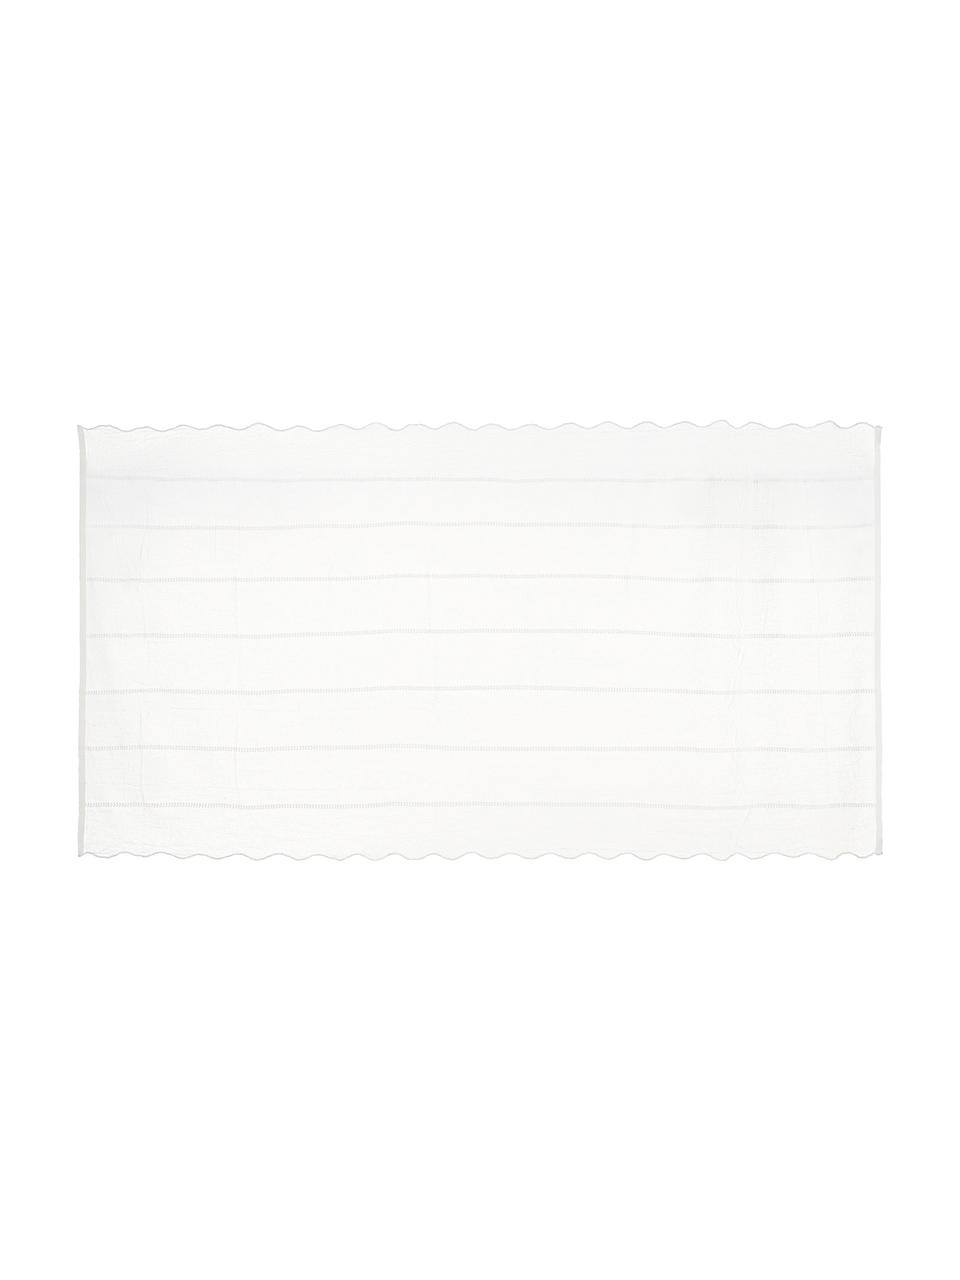 Bestickte Tischdecke Bilia in Weiß mit gewelltem Saum, 100 % Polyester, Gebrochenes Weiß, Für 6 - 10 Personen (B 160 x L 320 cm)